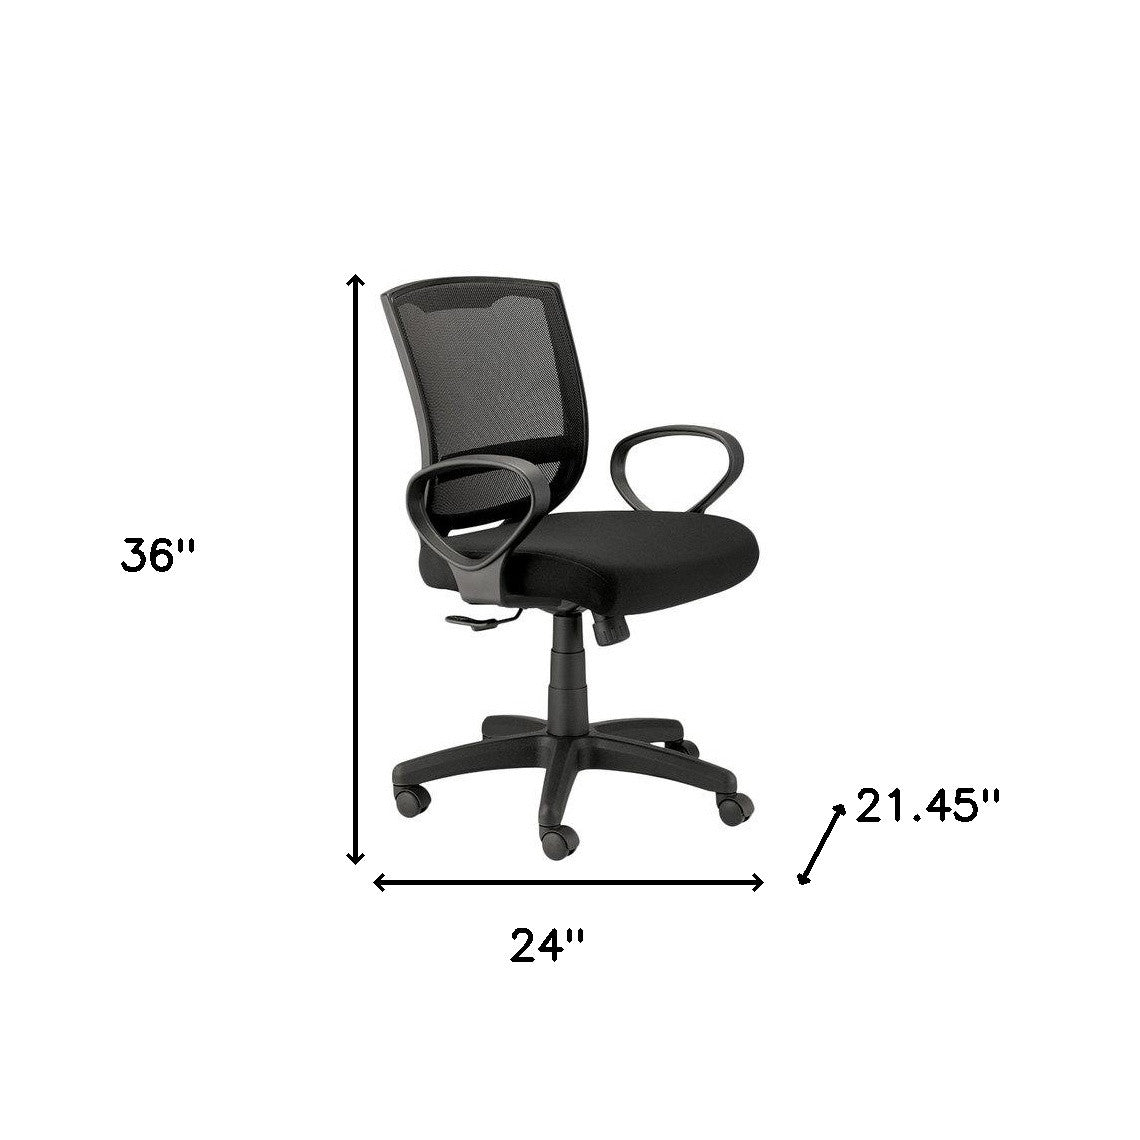 24" x 21.45" x 36" Black Mesh Chair-1